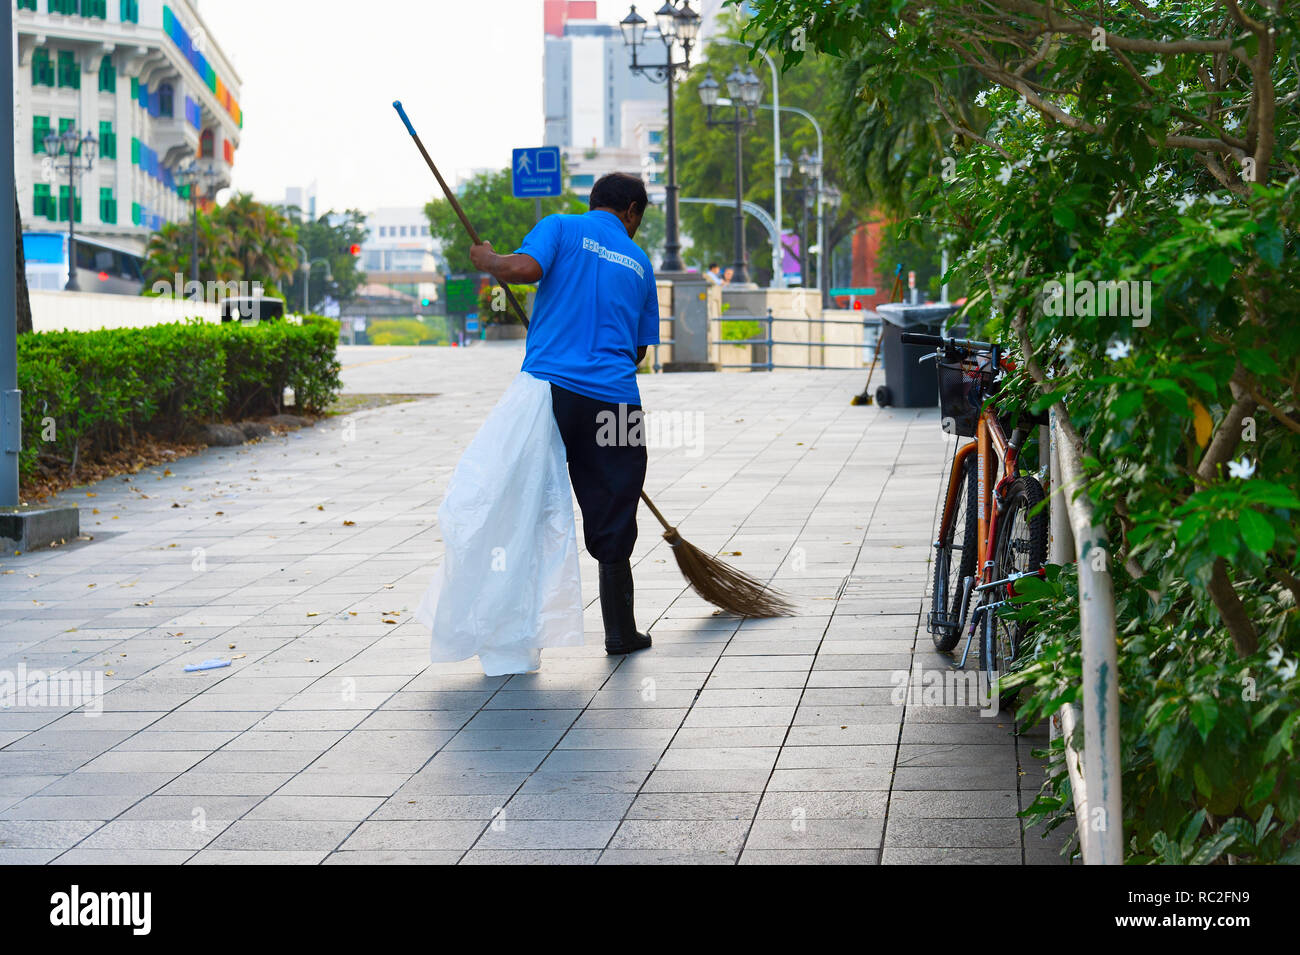 Singapur - Jan 15, 2017: Arbeiter Reinigung der Straße in Singapur. Singapur ist ein globaler Handel, Finanzen und Transport Hub Stockfoto